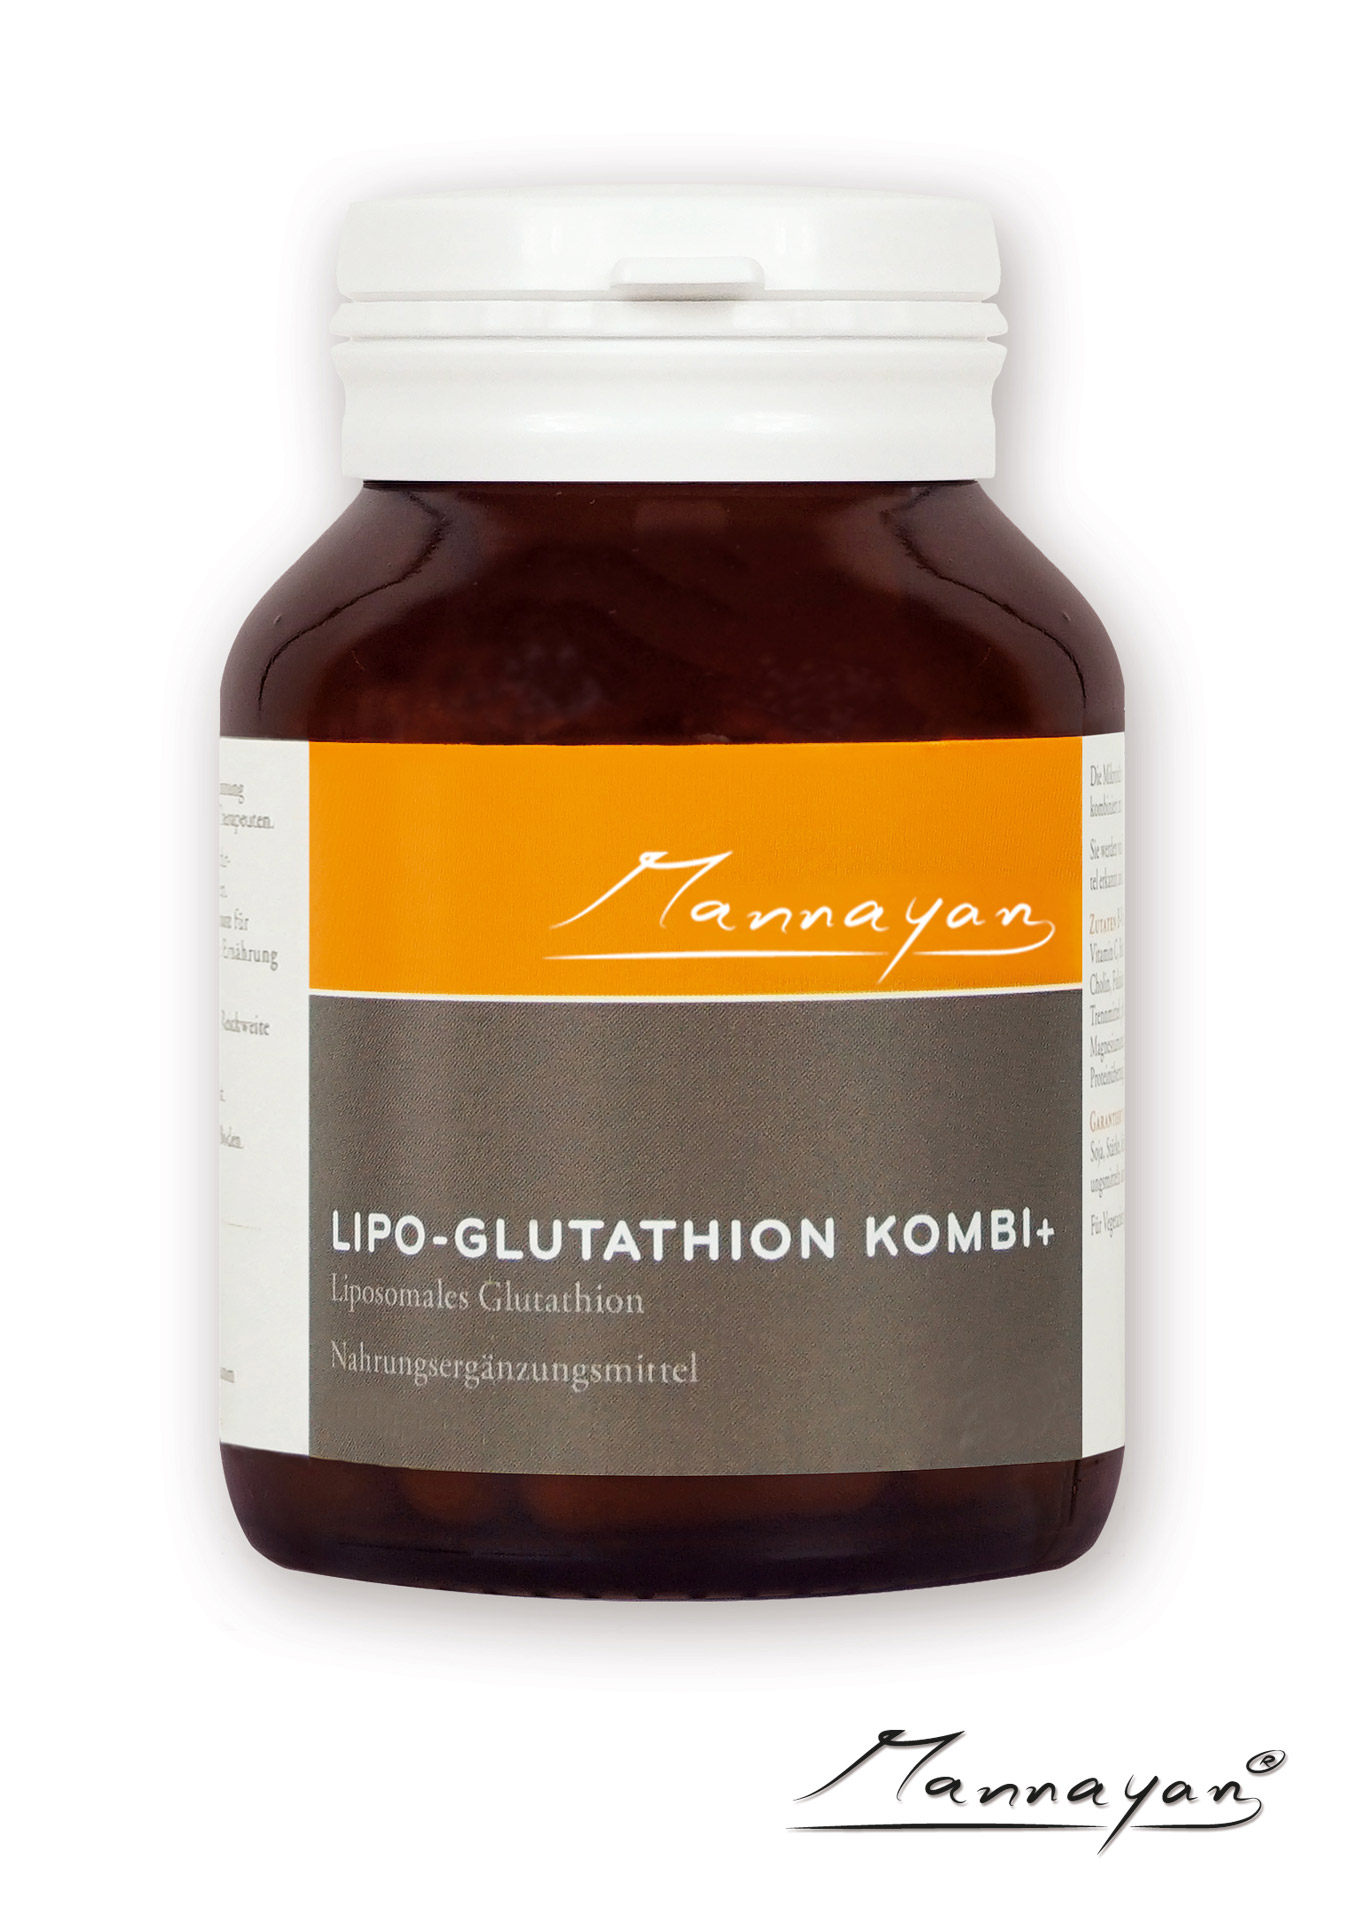 Lipo-Glutathion Kombi+ von Mannayan